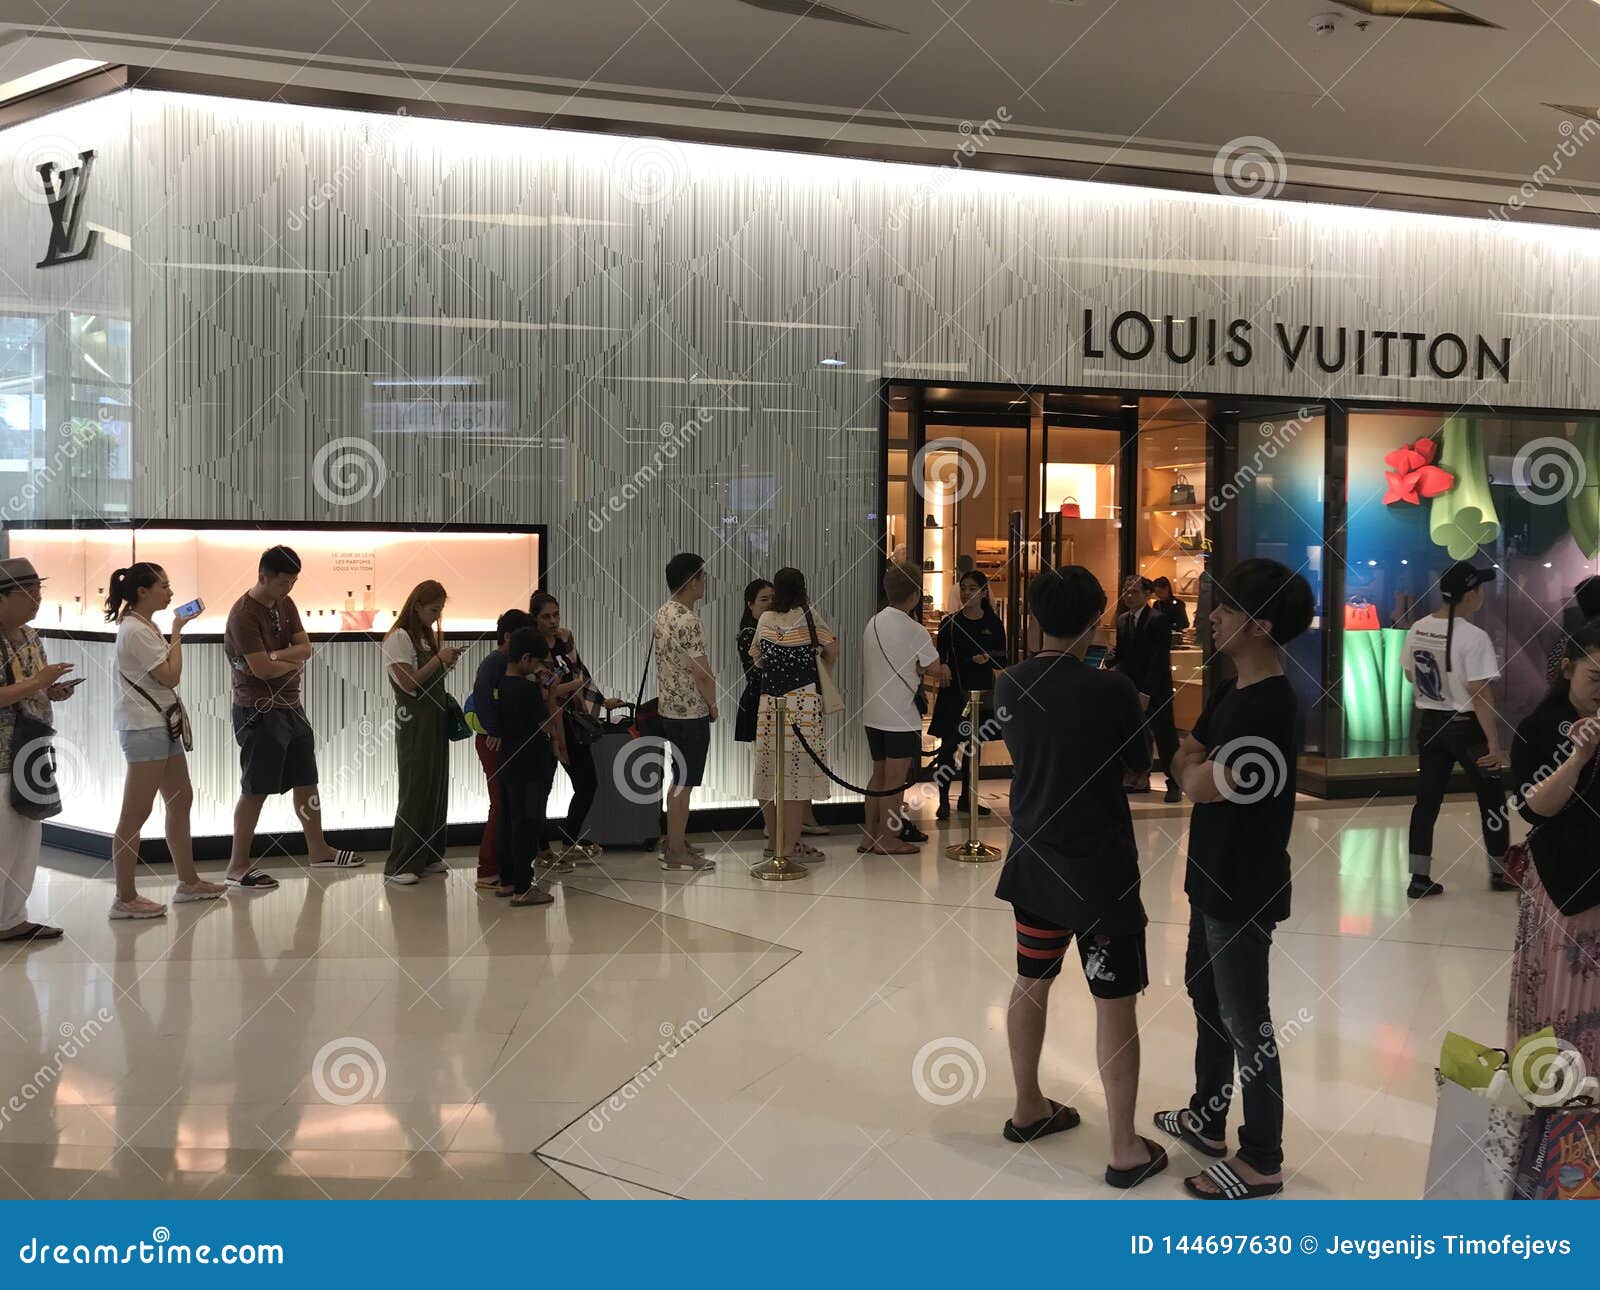 Bangkokthailand Dec 10 2016 Louis Vuitton Stock Photo 576365206